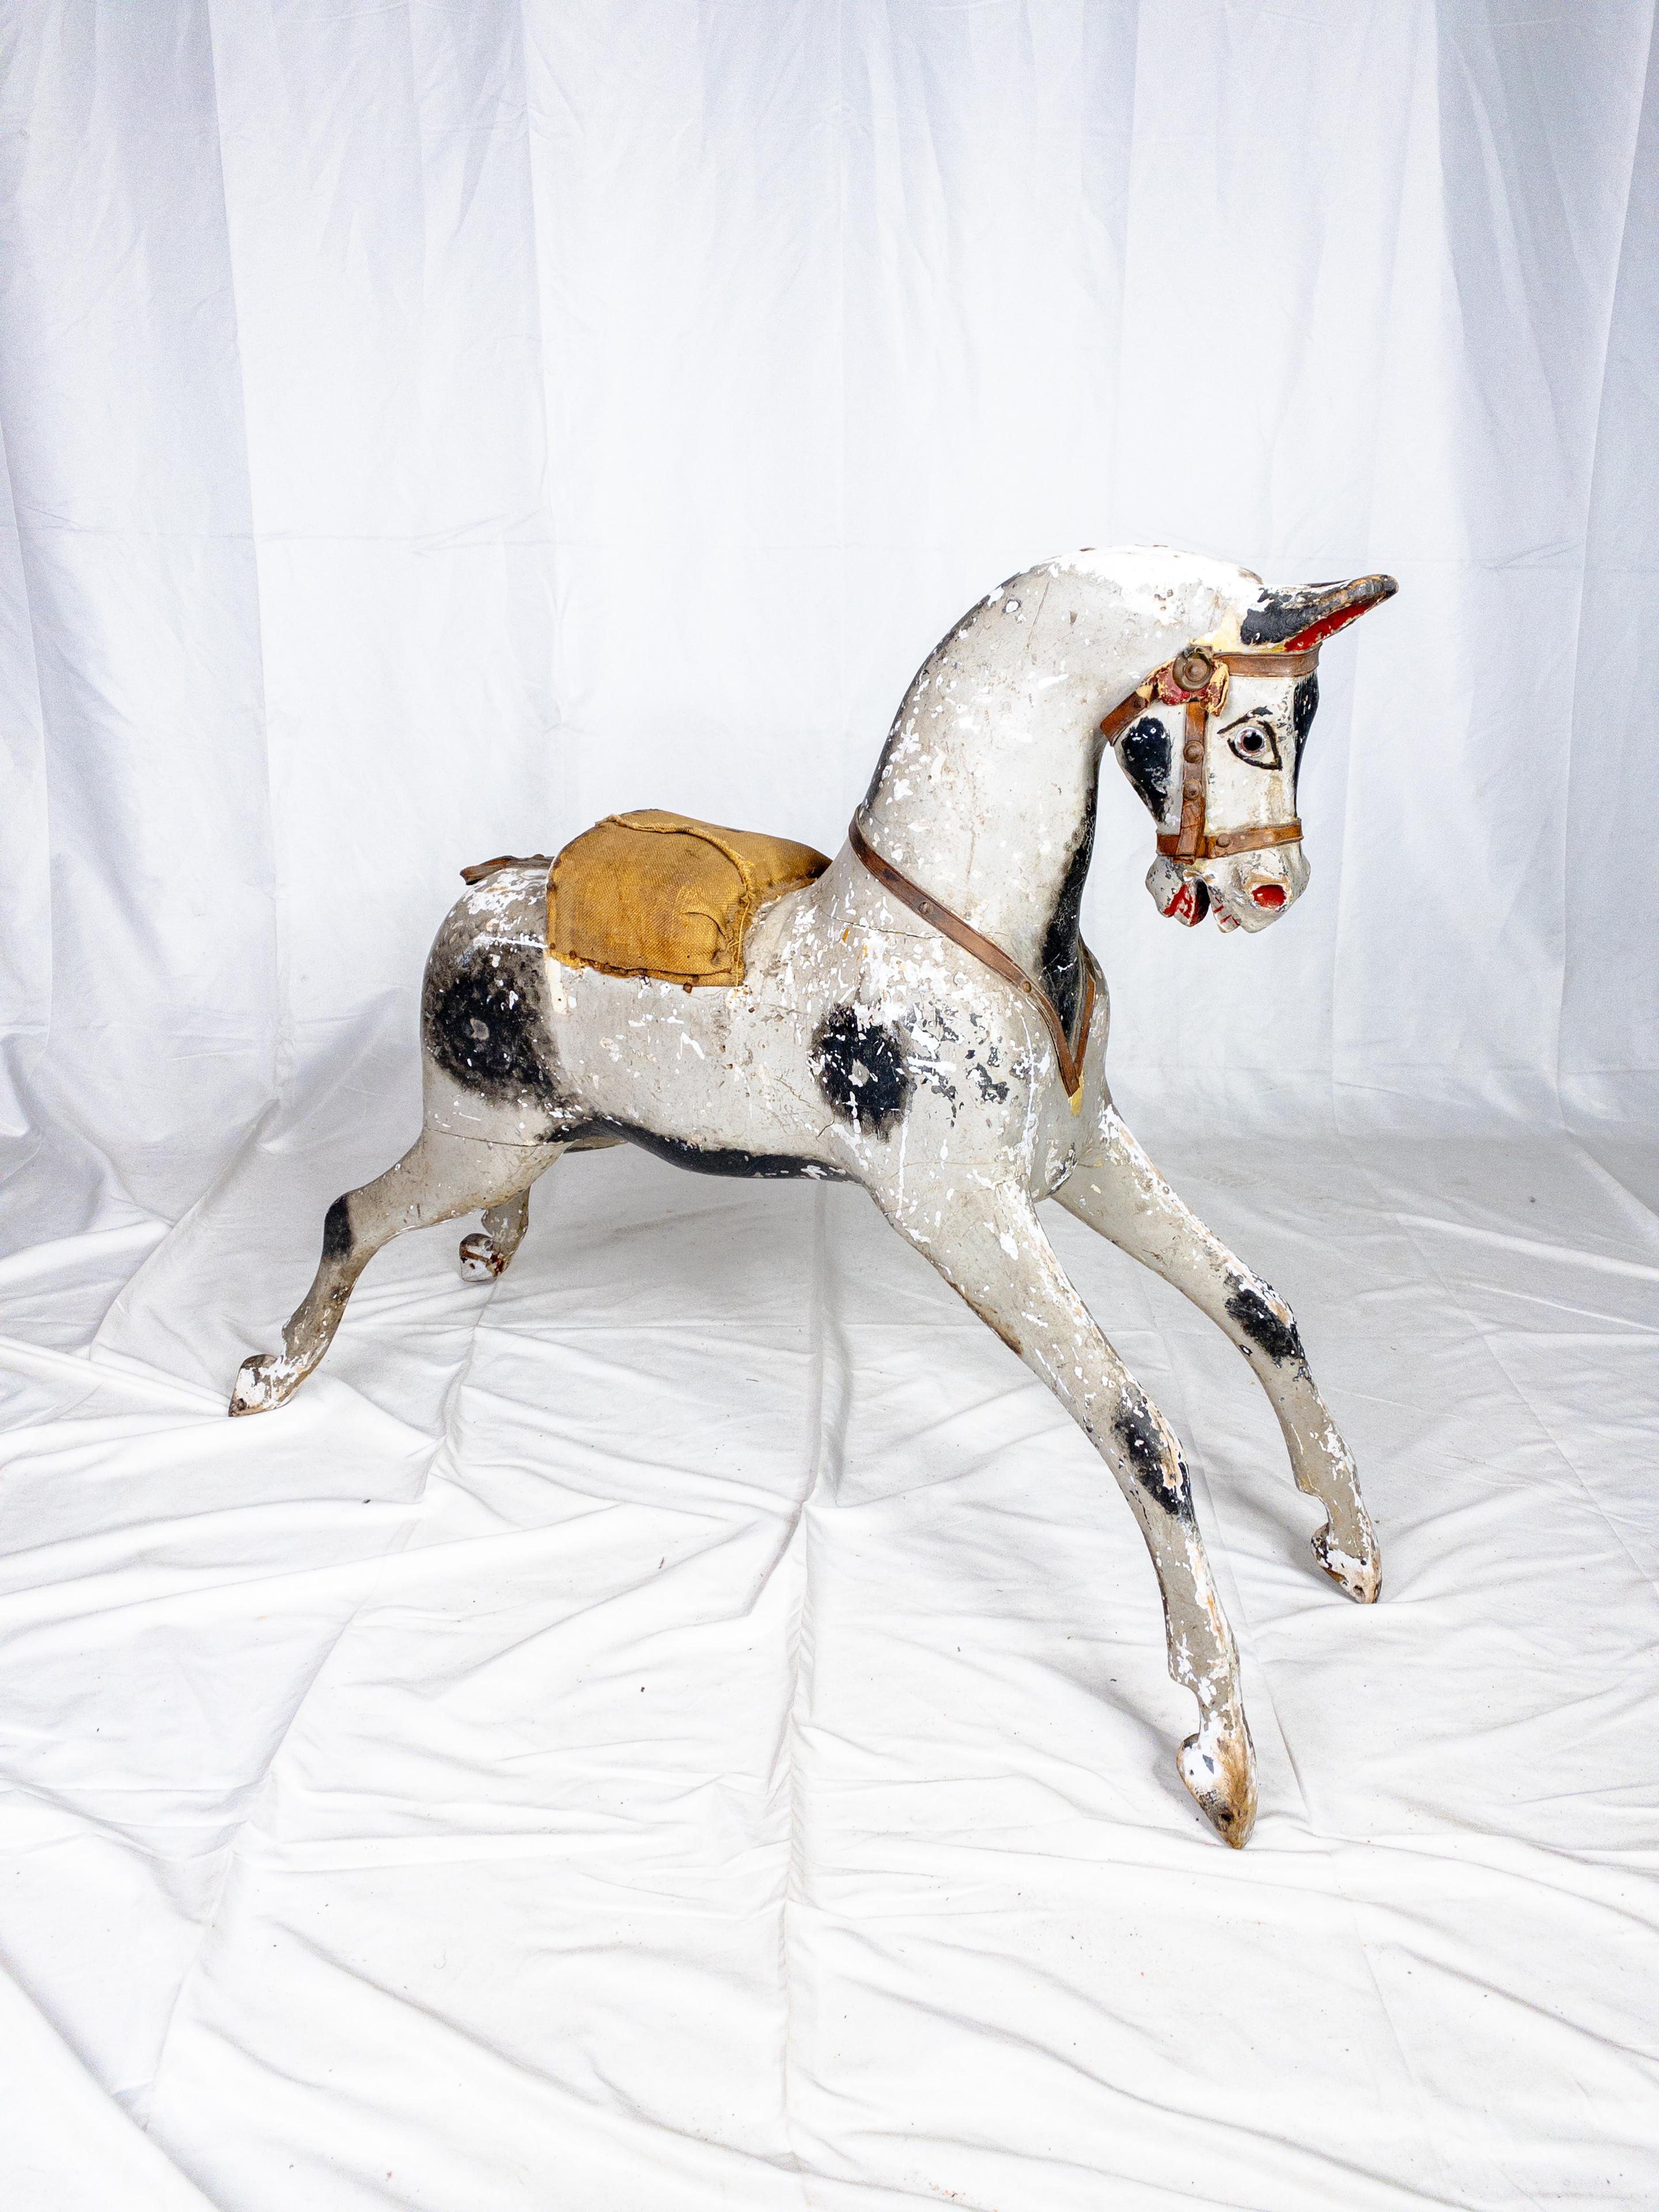 Le cheval à bascule original du XIXe siècle, avec sa bascule manquante, reste une relique nostalgique, murmurant des histoires d'époques révolues et de fantaisies d'enfance. Malgré son âge, la charmante figure équine conserve des vestiges de sa